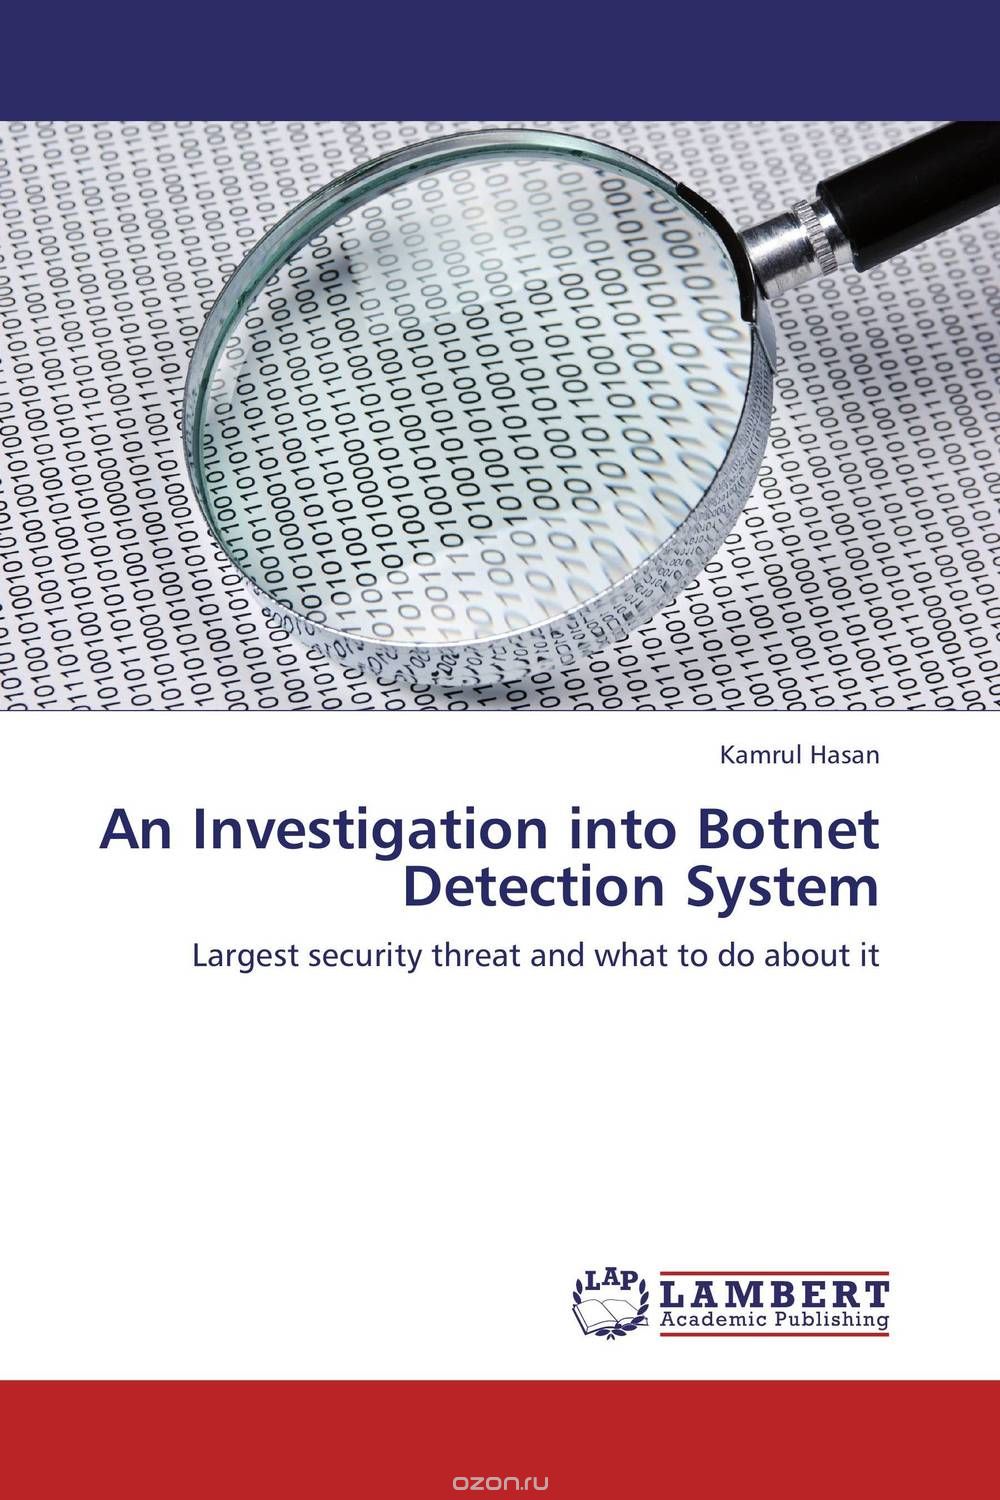 Скачать книгу "An Investigation into Botnet Detection System"